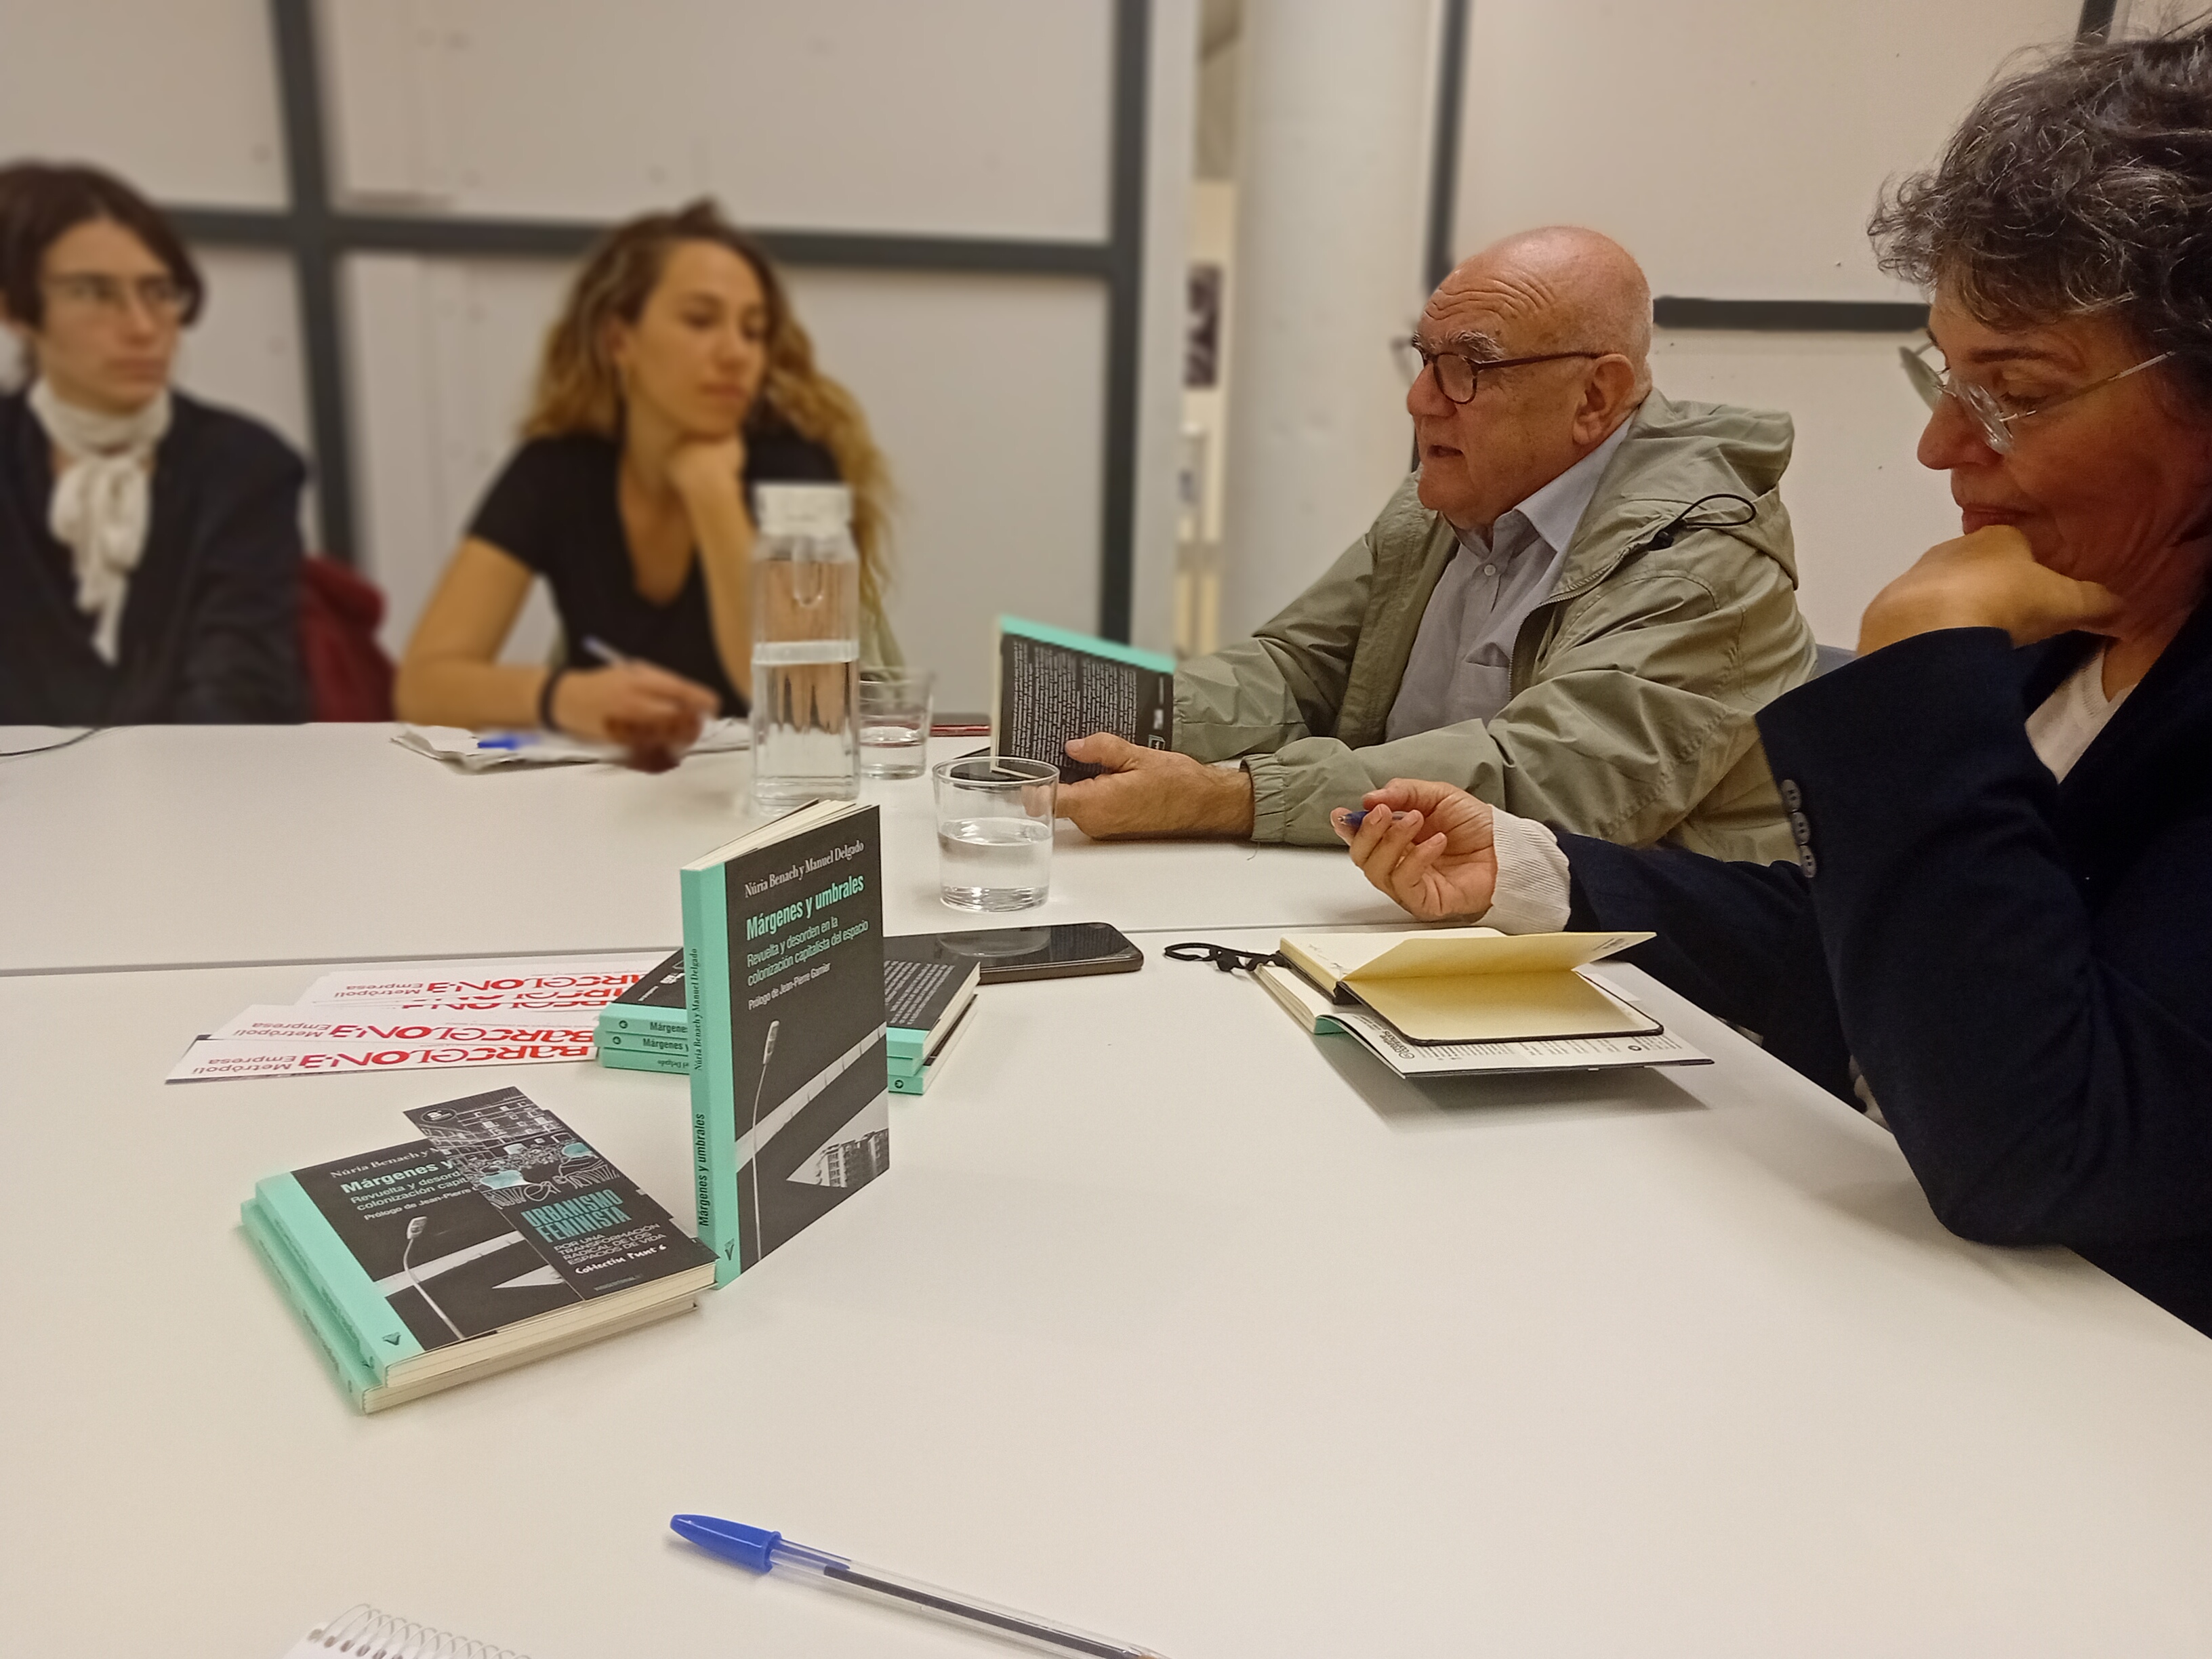 Núria Benach i Manuel Delgado durant la sessió «Lectures crítiques de la ciutat», a la biblioteca Ignasi Iglésias-Can Fabra.